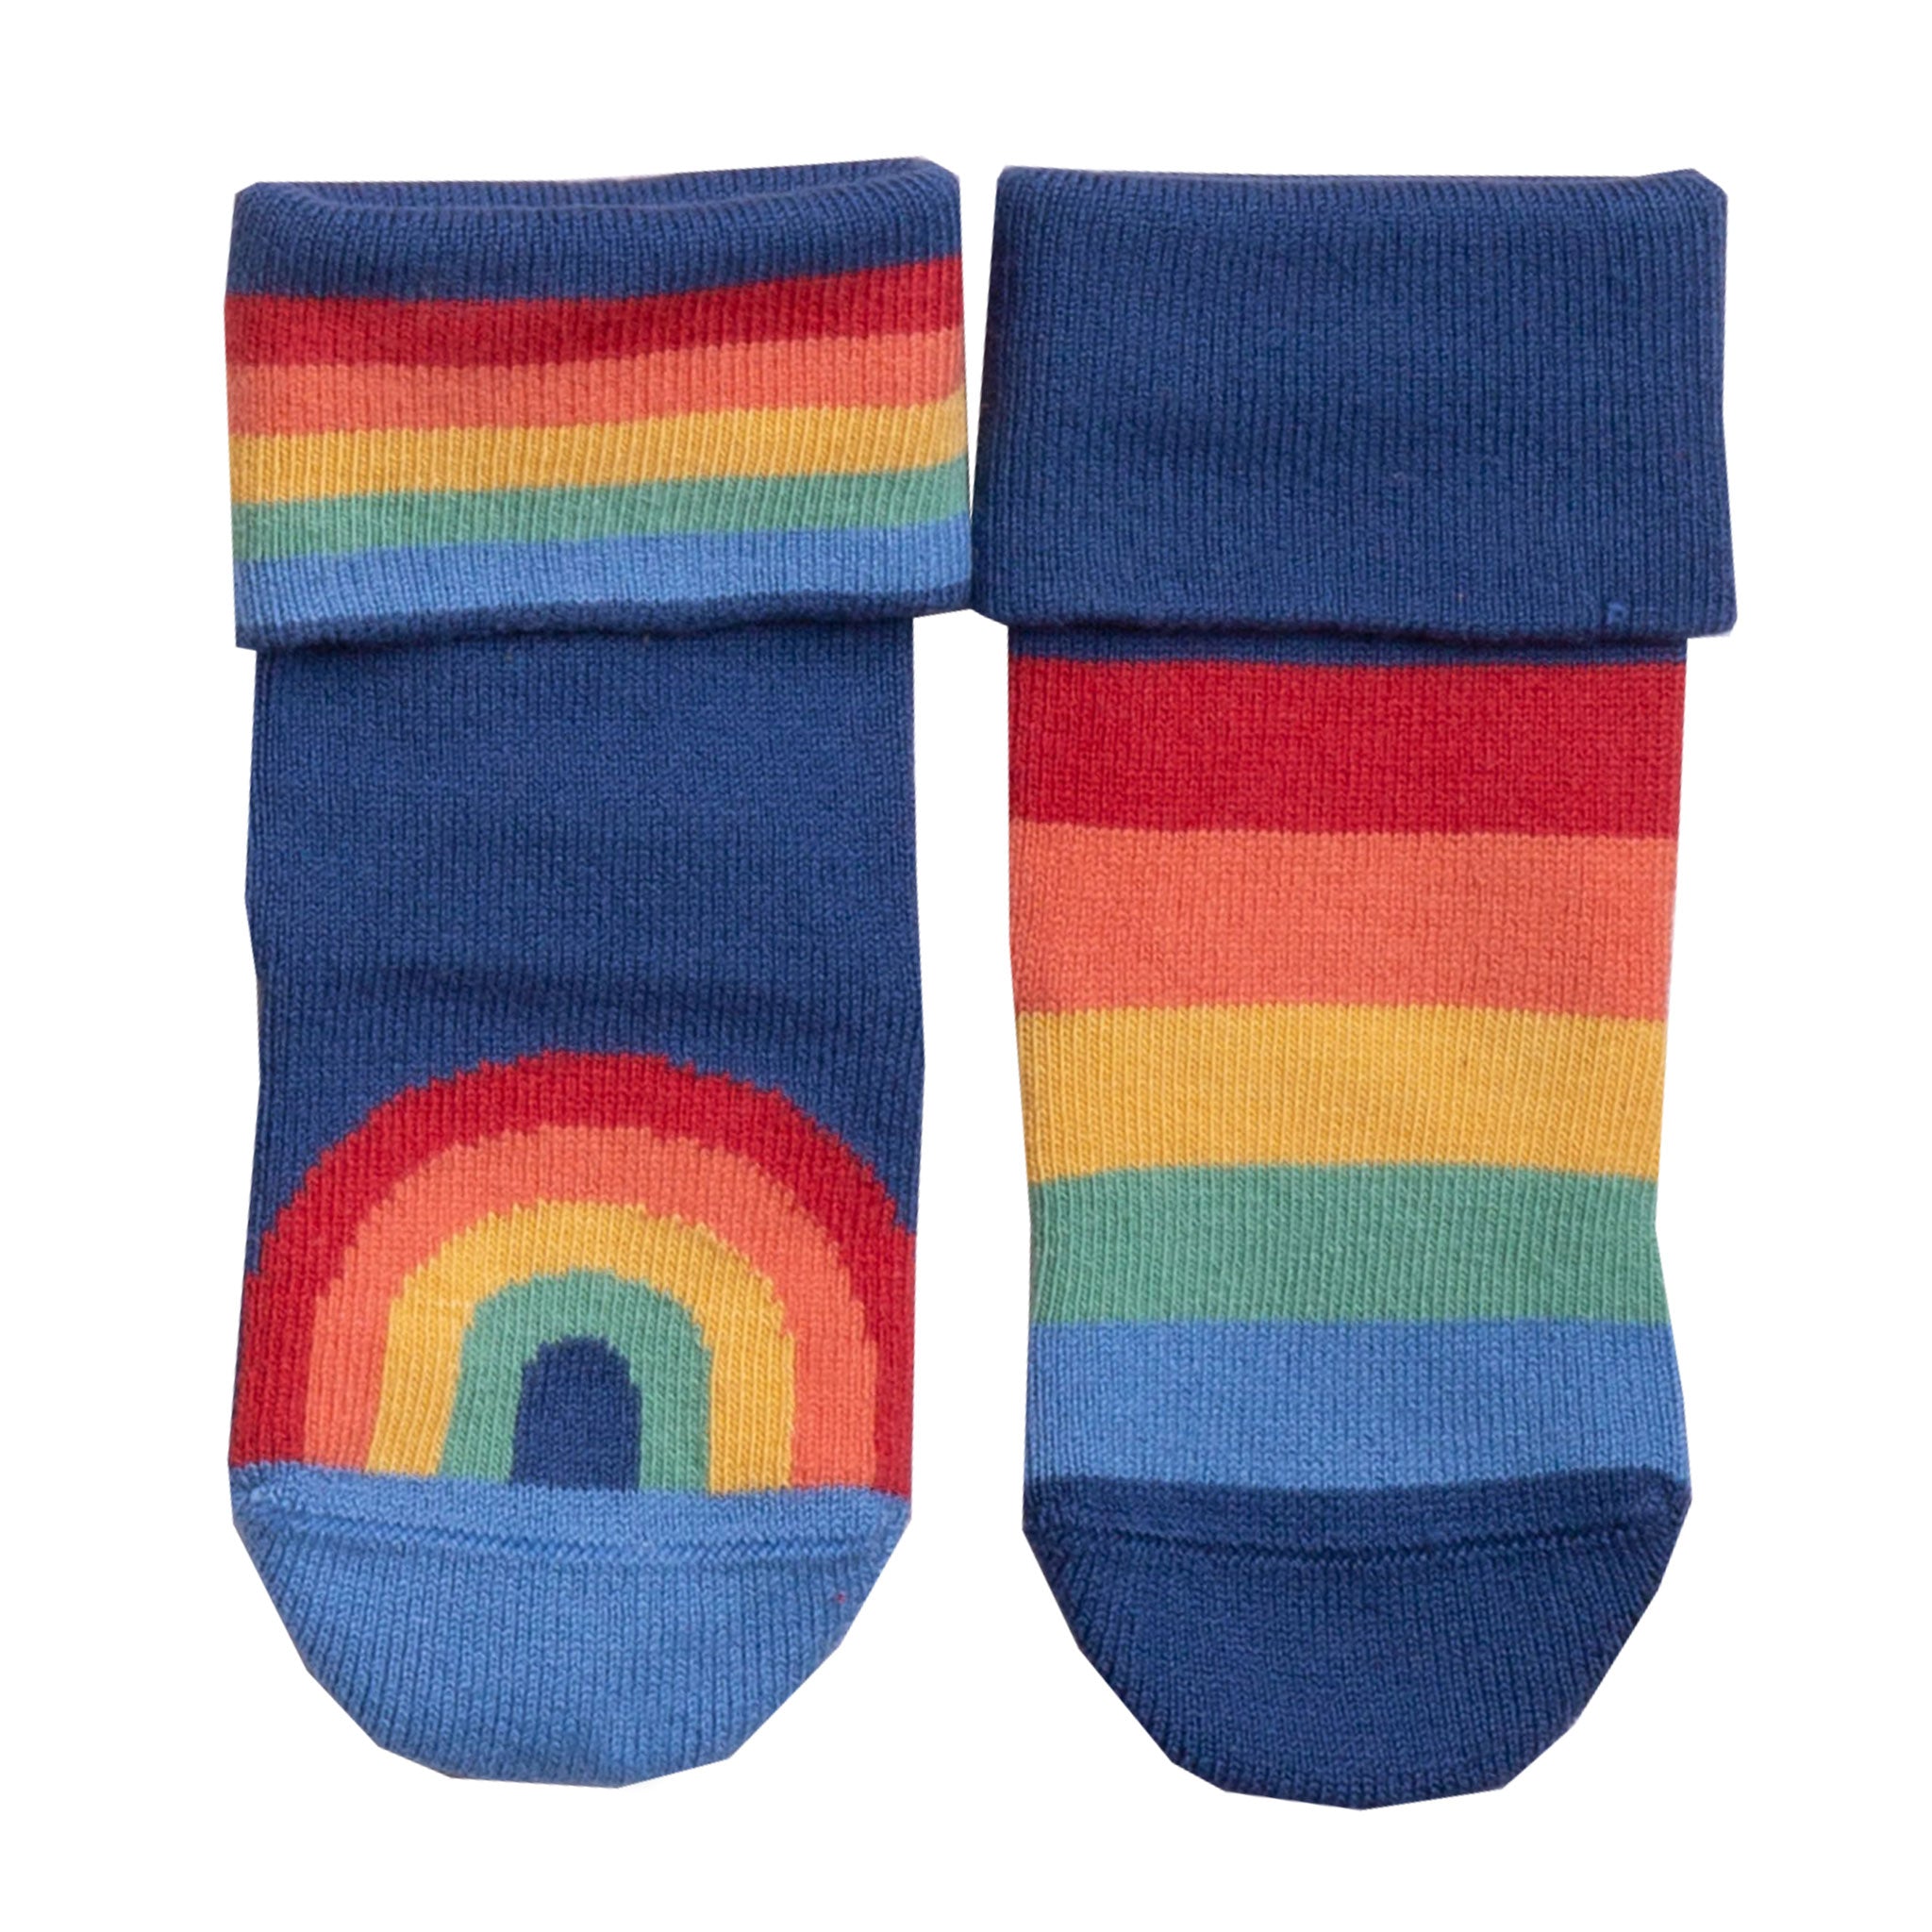 Kite rainbow socks fall